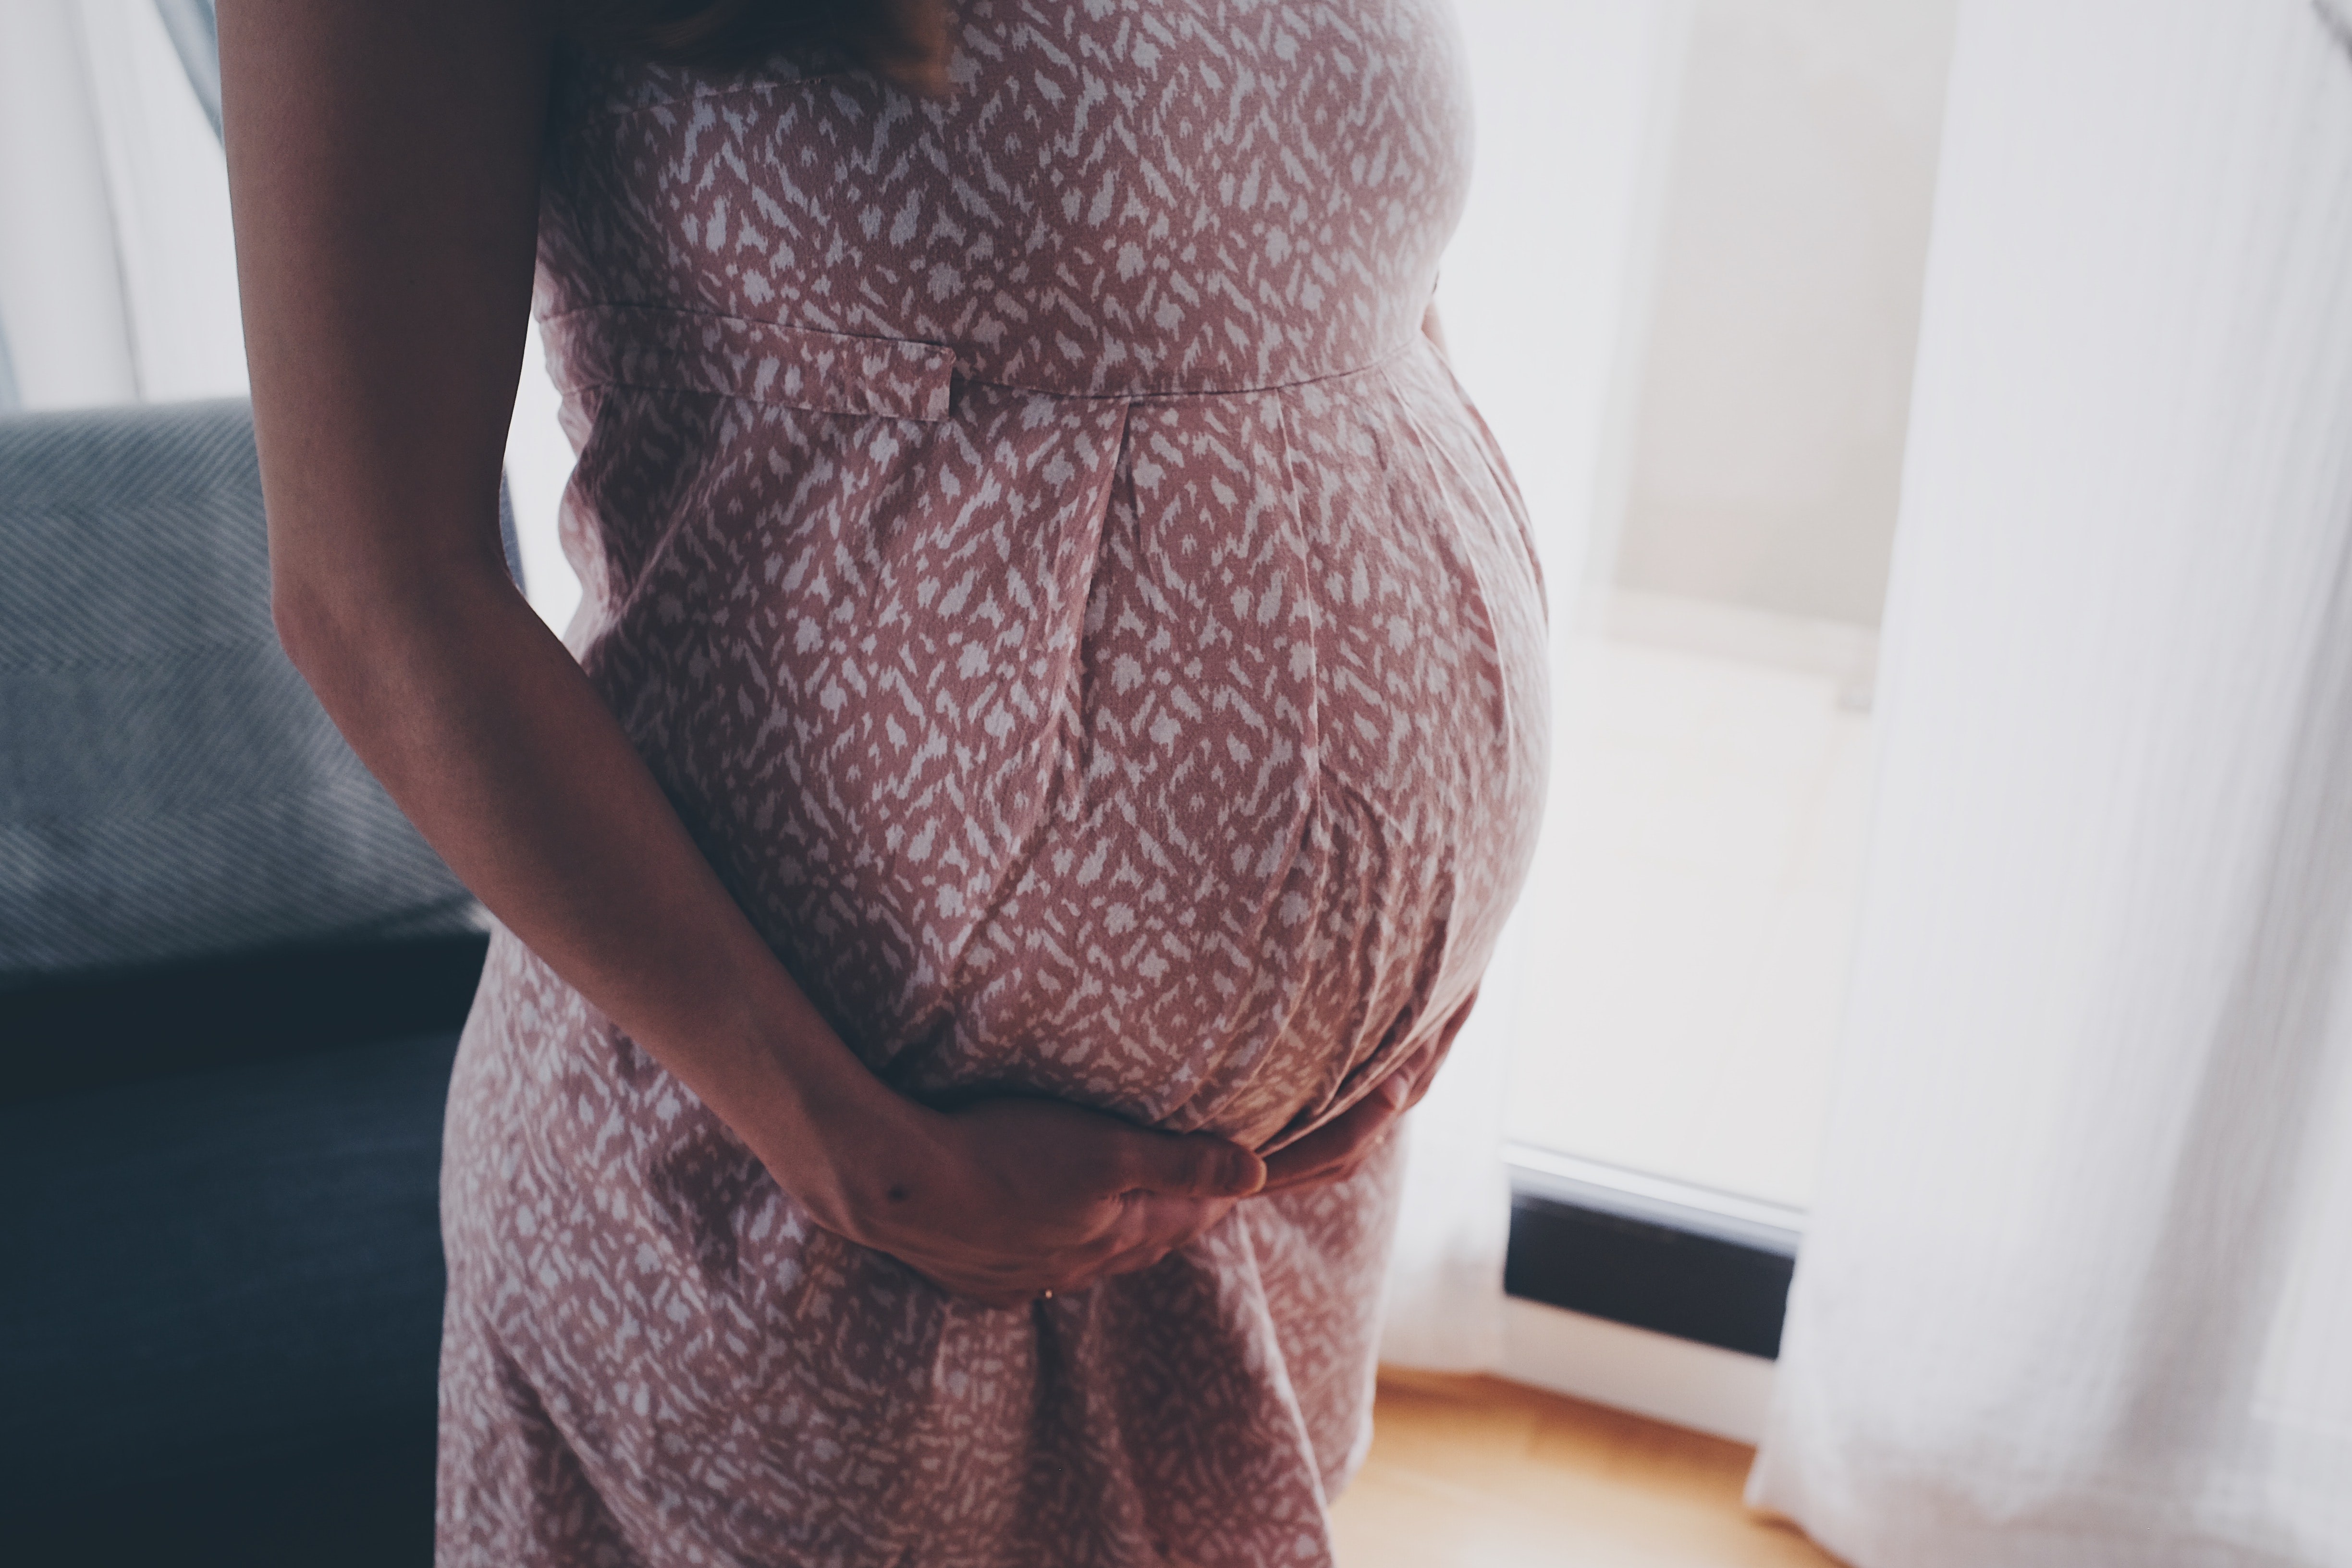 Níveis do hormônio cortisol na gravidez podem afetar o desenvolvimento do cérebro do feto, indica estudo liderado pela Universidade de Edimburgo (Foto: Ömürden Cengiz / Unsplash)